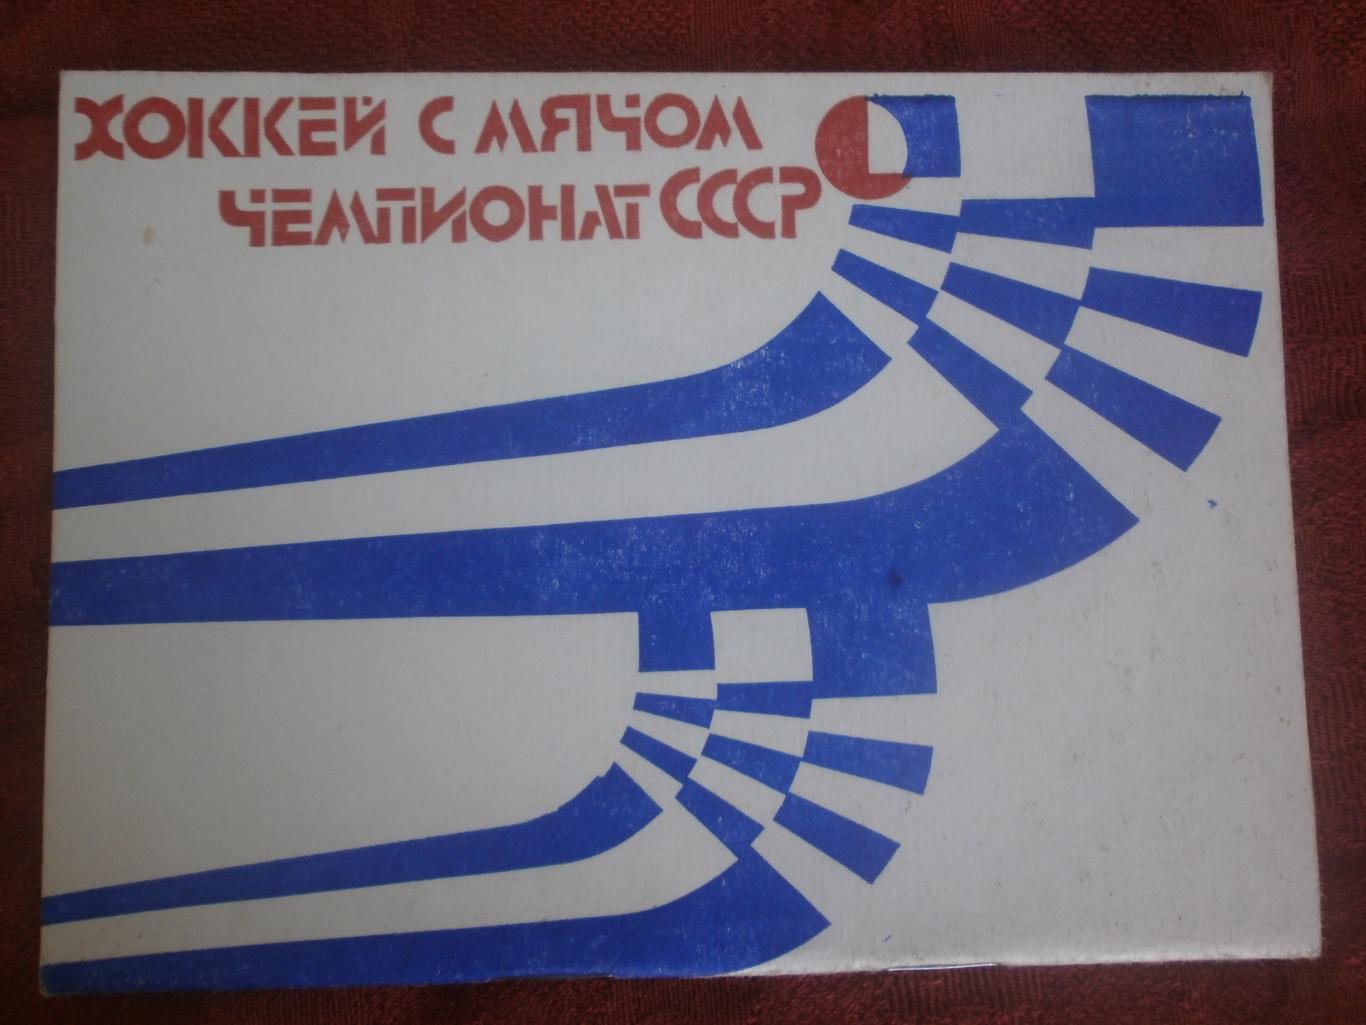 Календарь - справочник хоккей с мячом Архангельск 1984-85